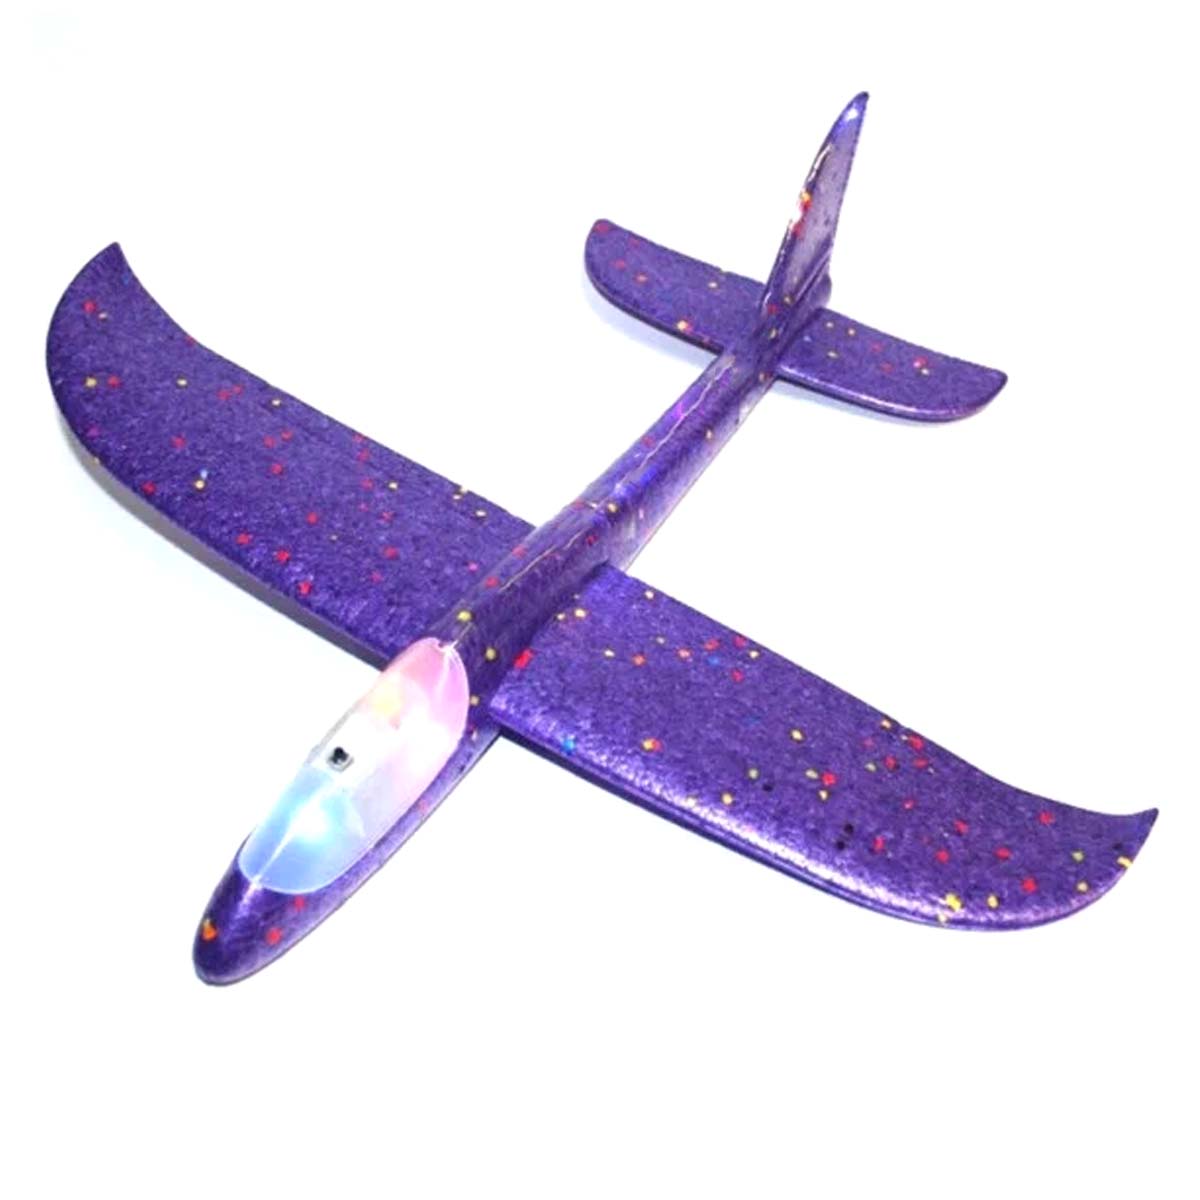 Метательный самолет из пенопласта, 45 см, LED подсветка кабины, цвет фиолетовый